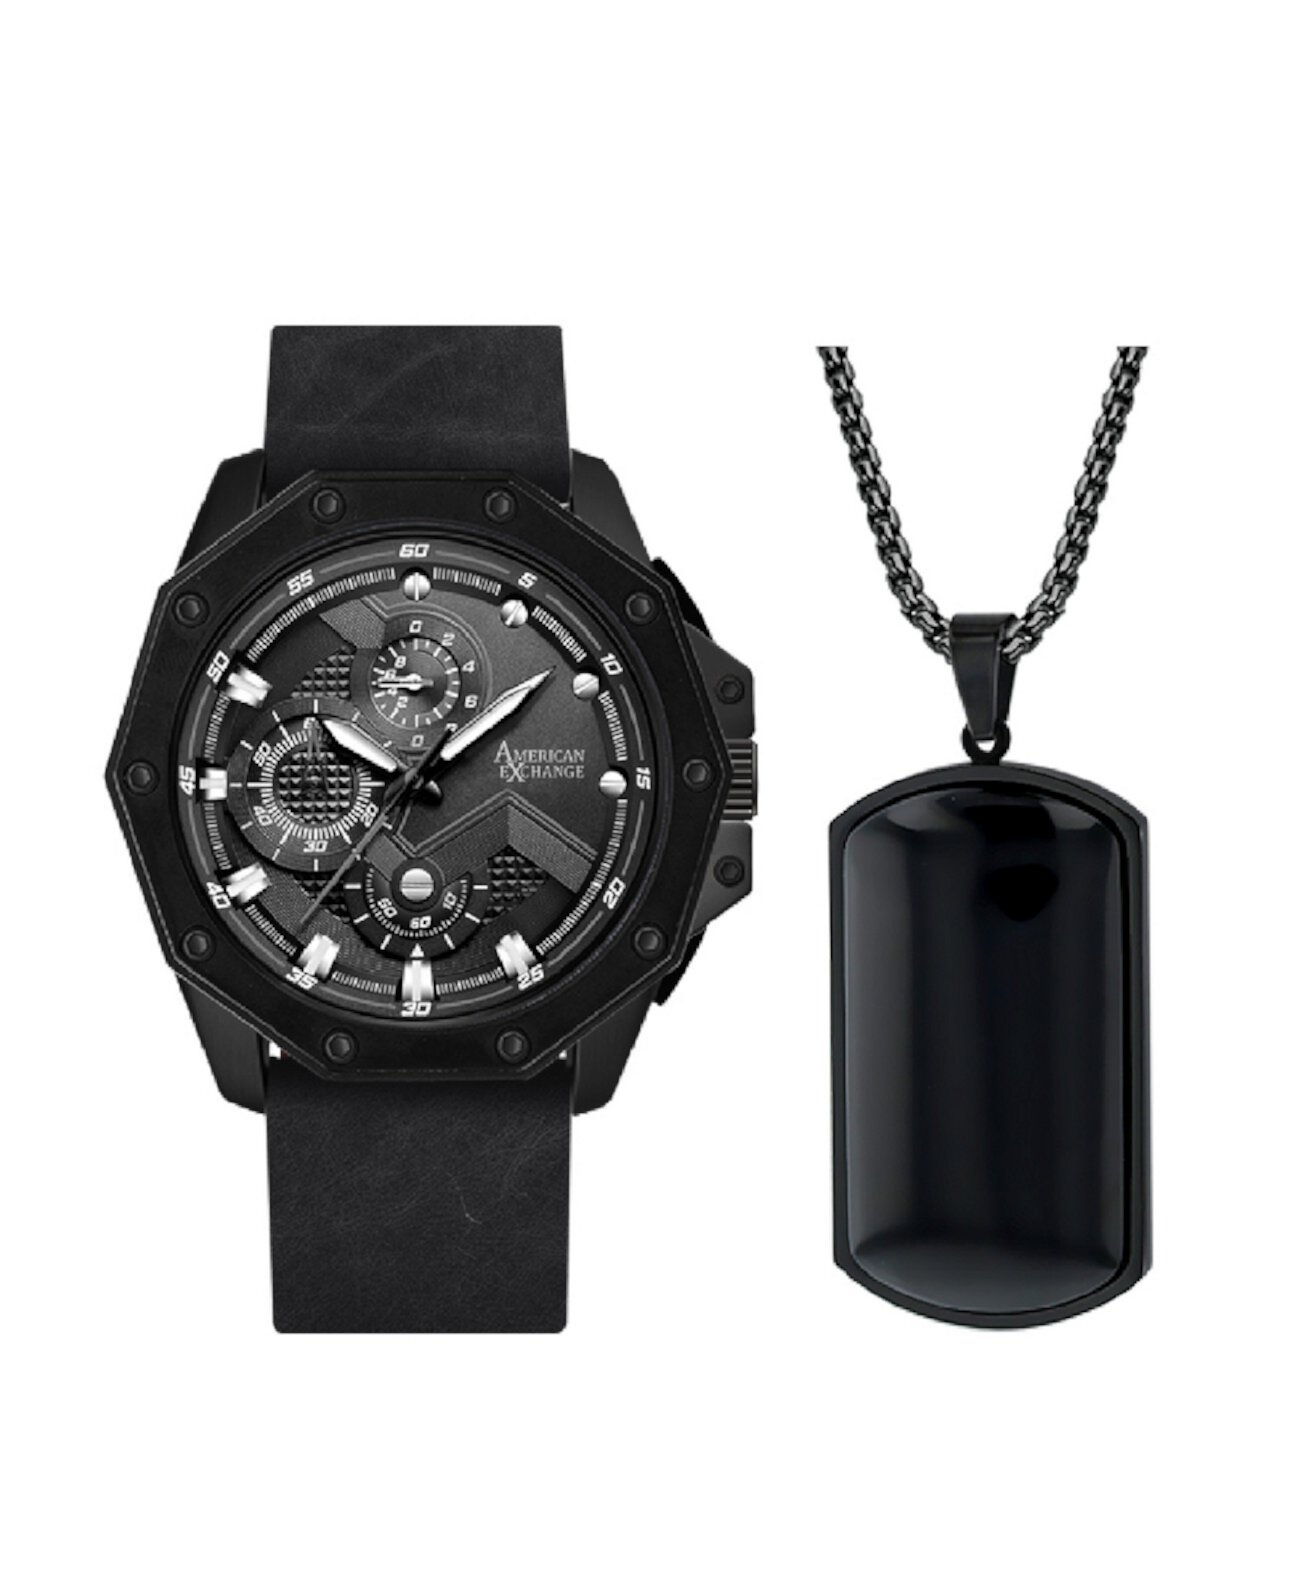 Мужские аналоговые кварцевые часы с тремя стрелками, матовый черный кожаный ремешок, 48 мм, подарочный набор American Exchange